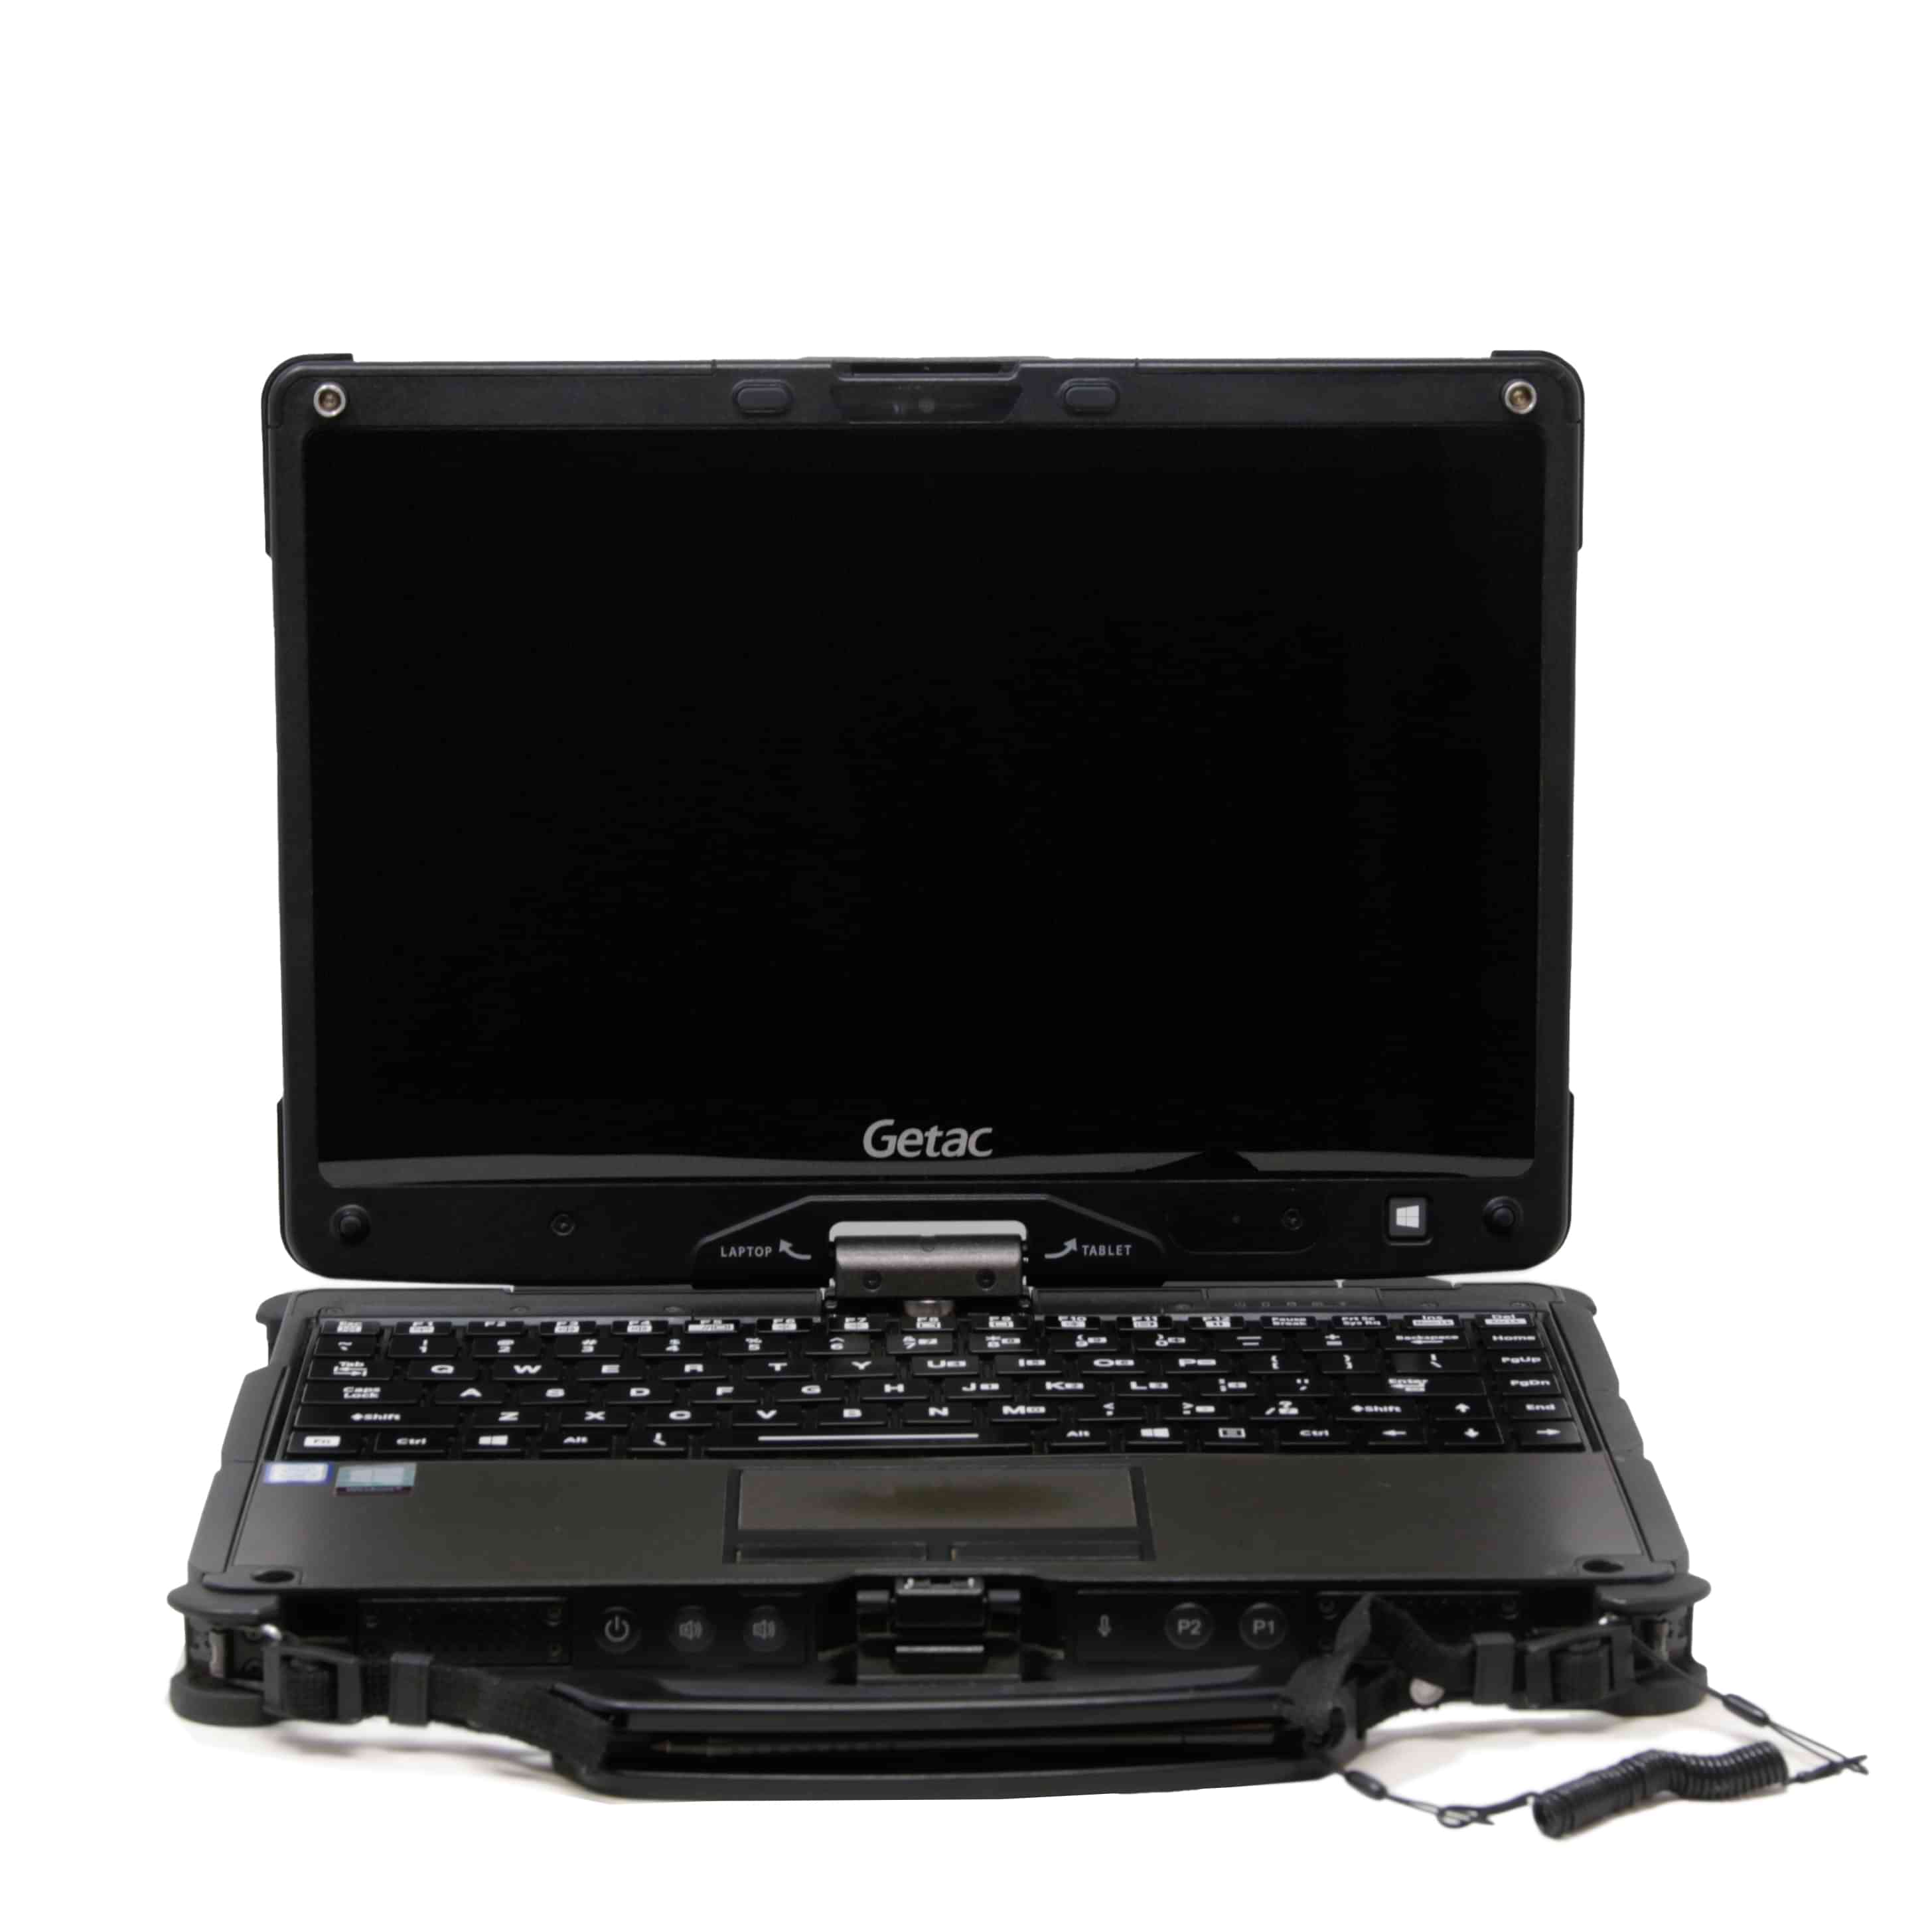 Refurbished Getac Rugged Laptops